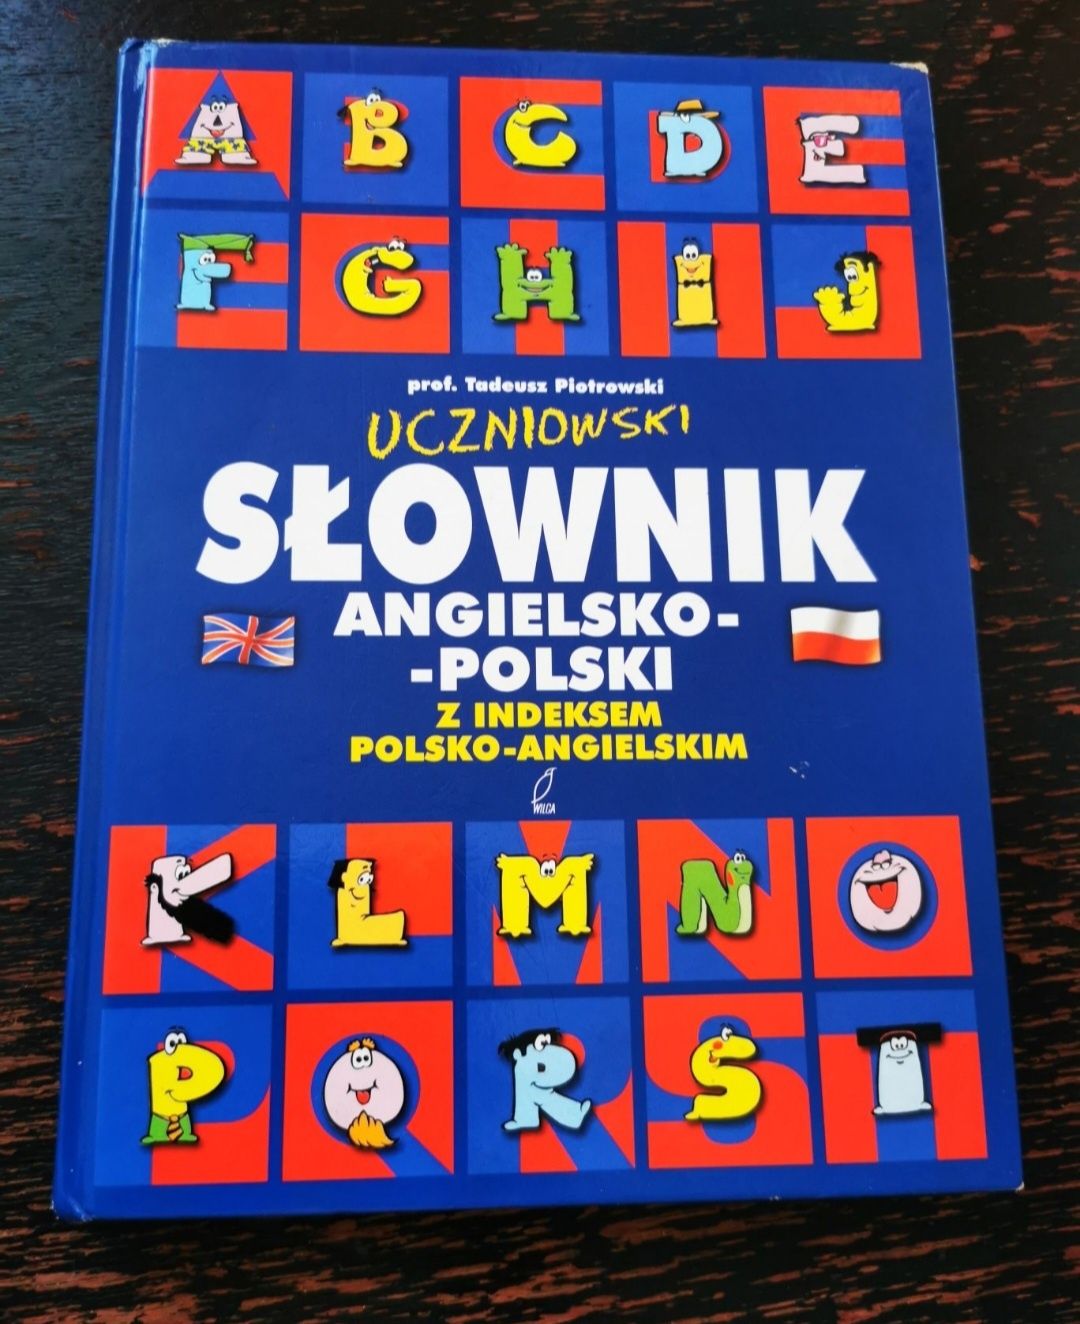 Słownik Uczniowski Angielsko-Polski prof. Tadeusz Piotrkowski